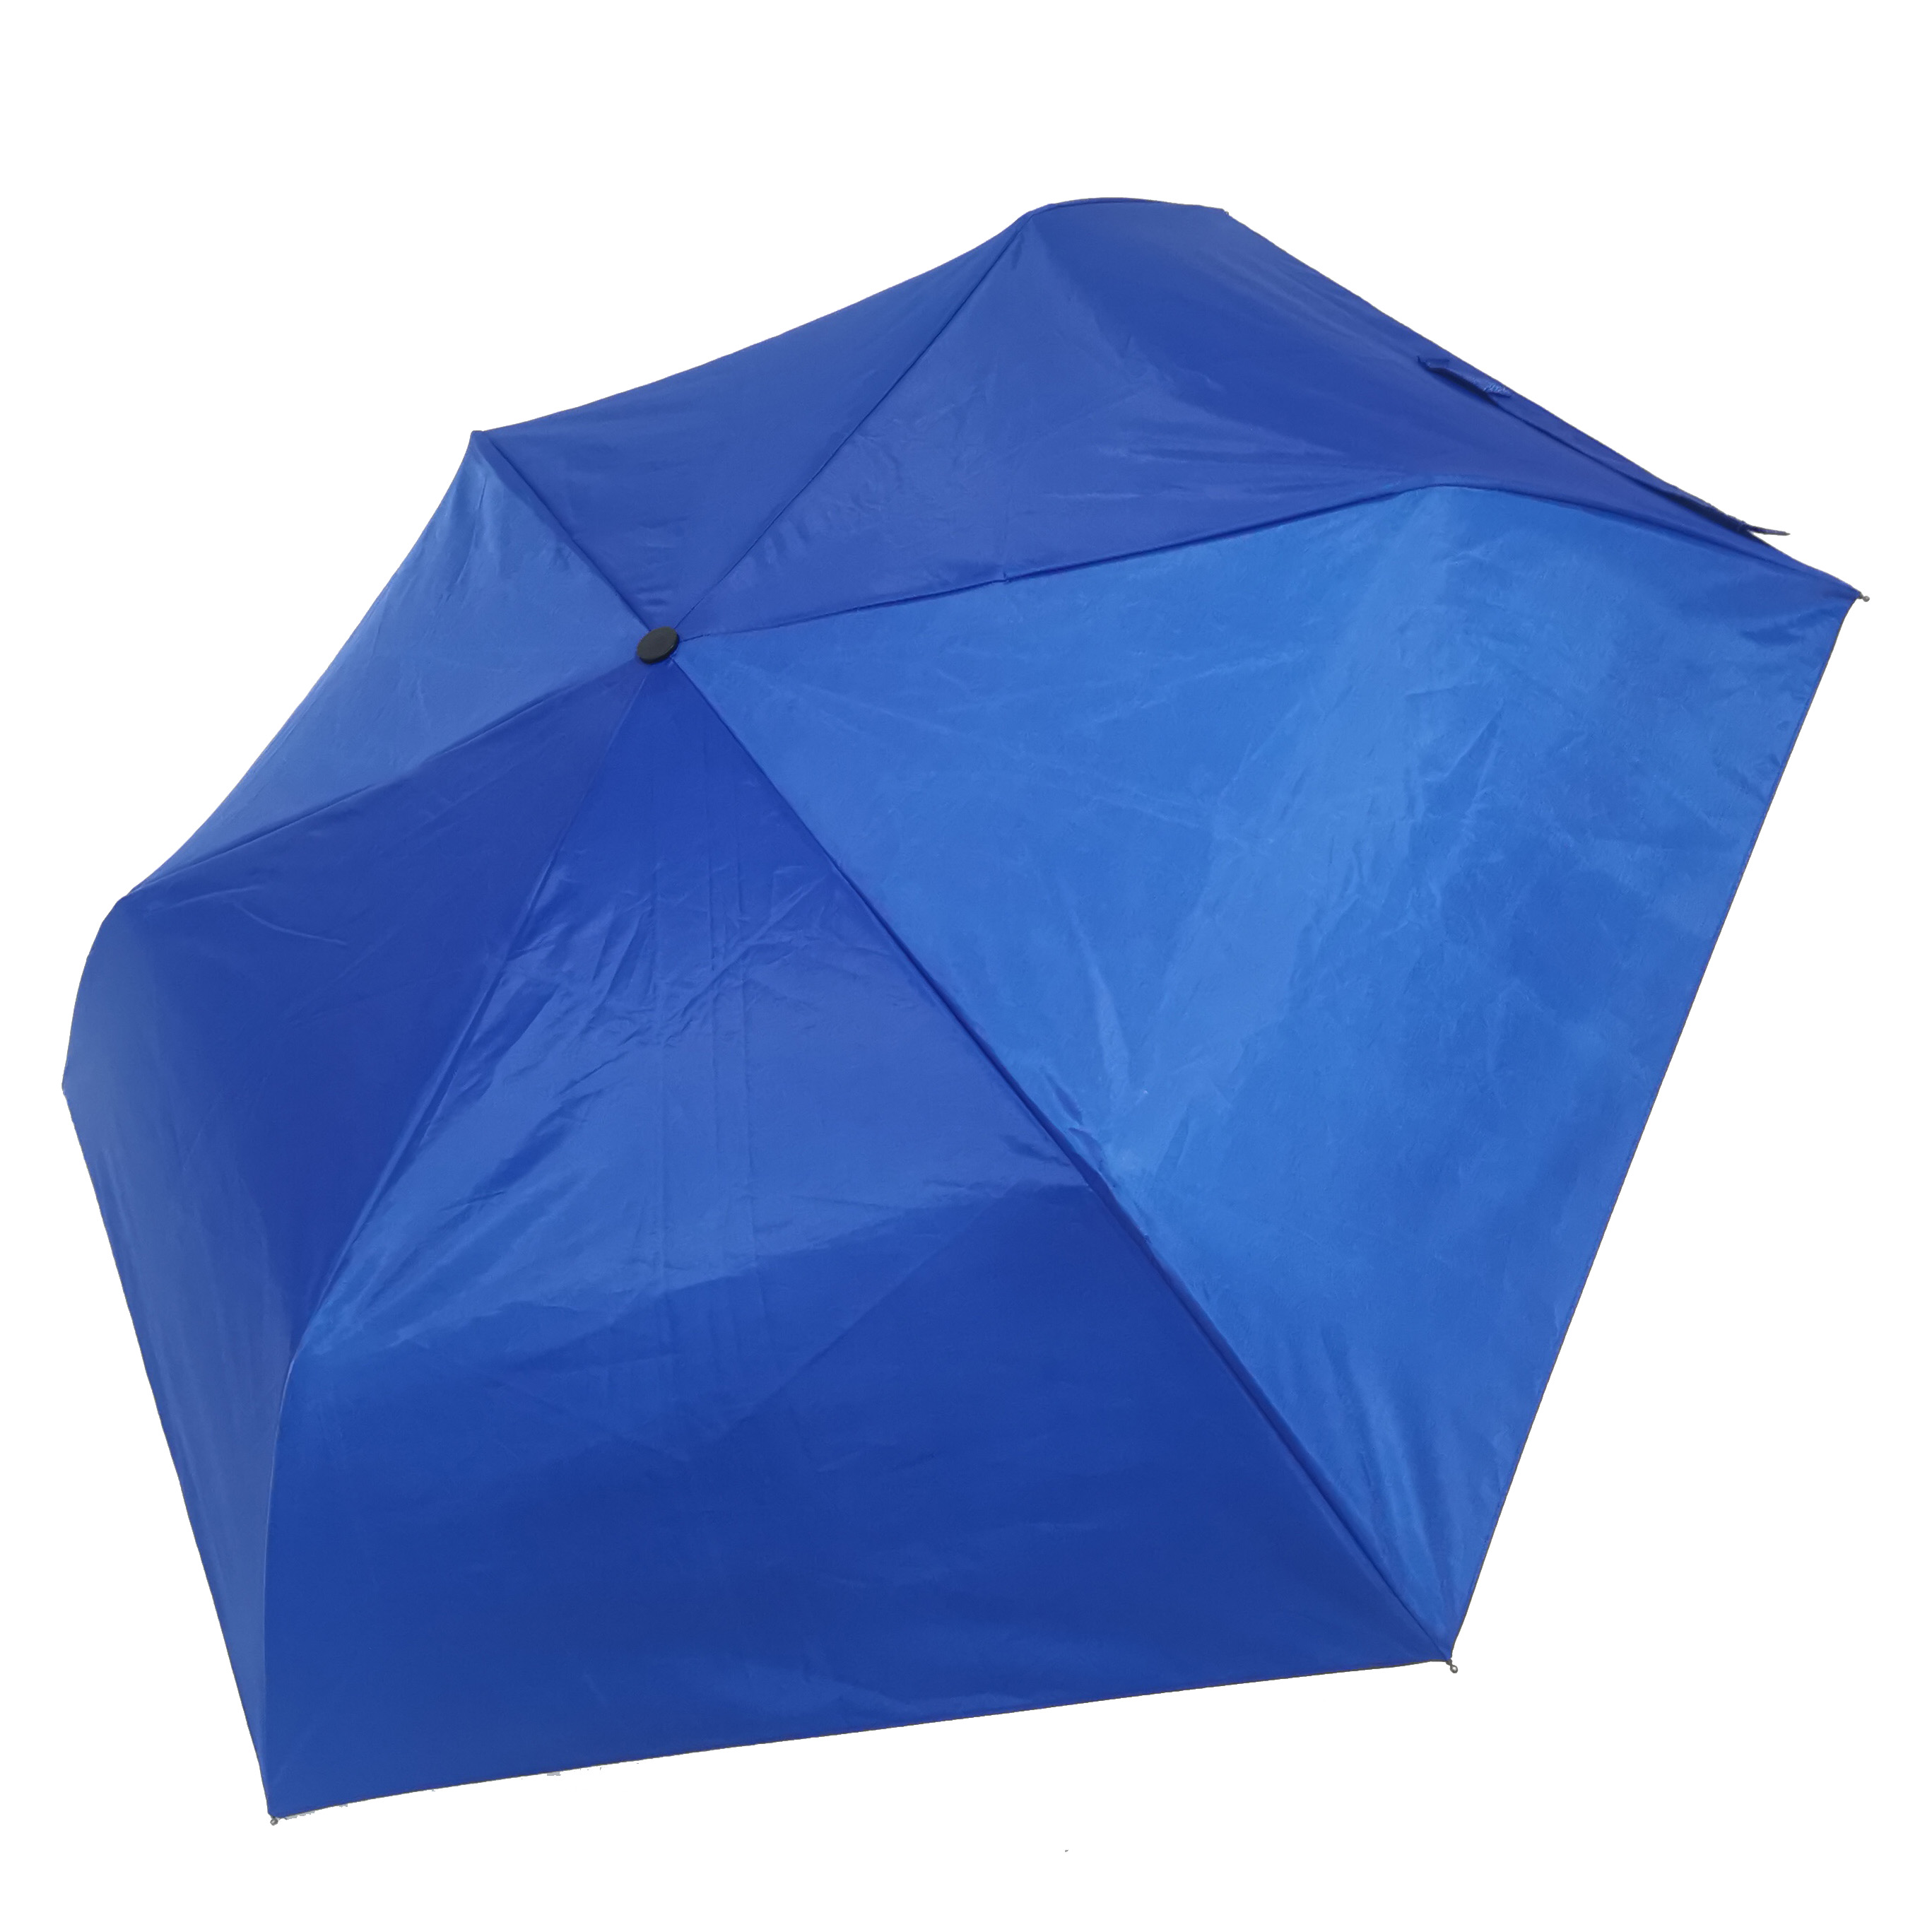 ombrelli di bona qualità